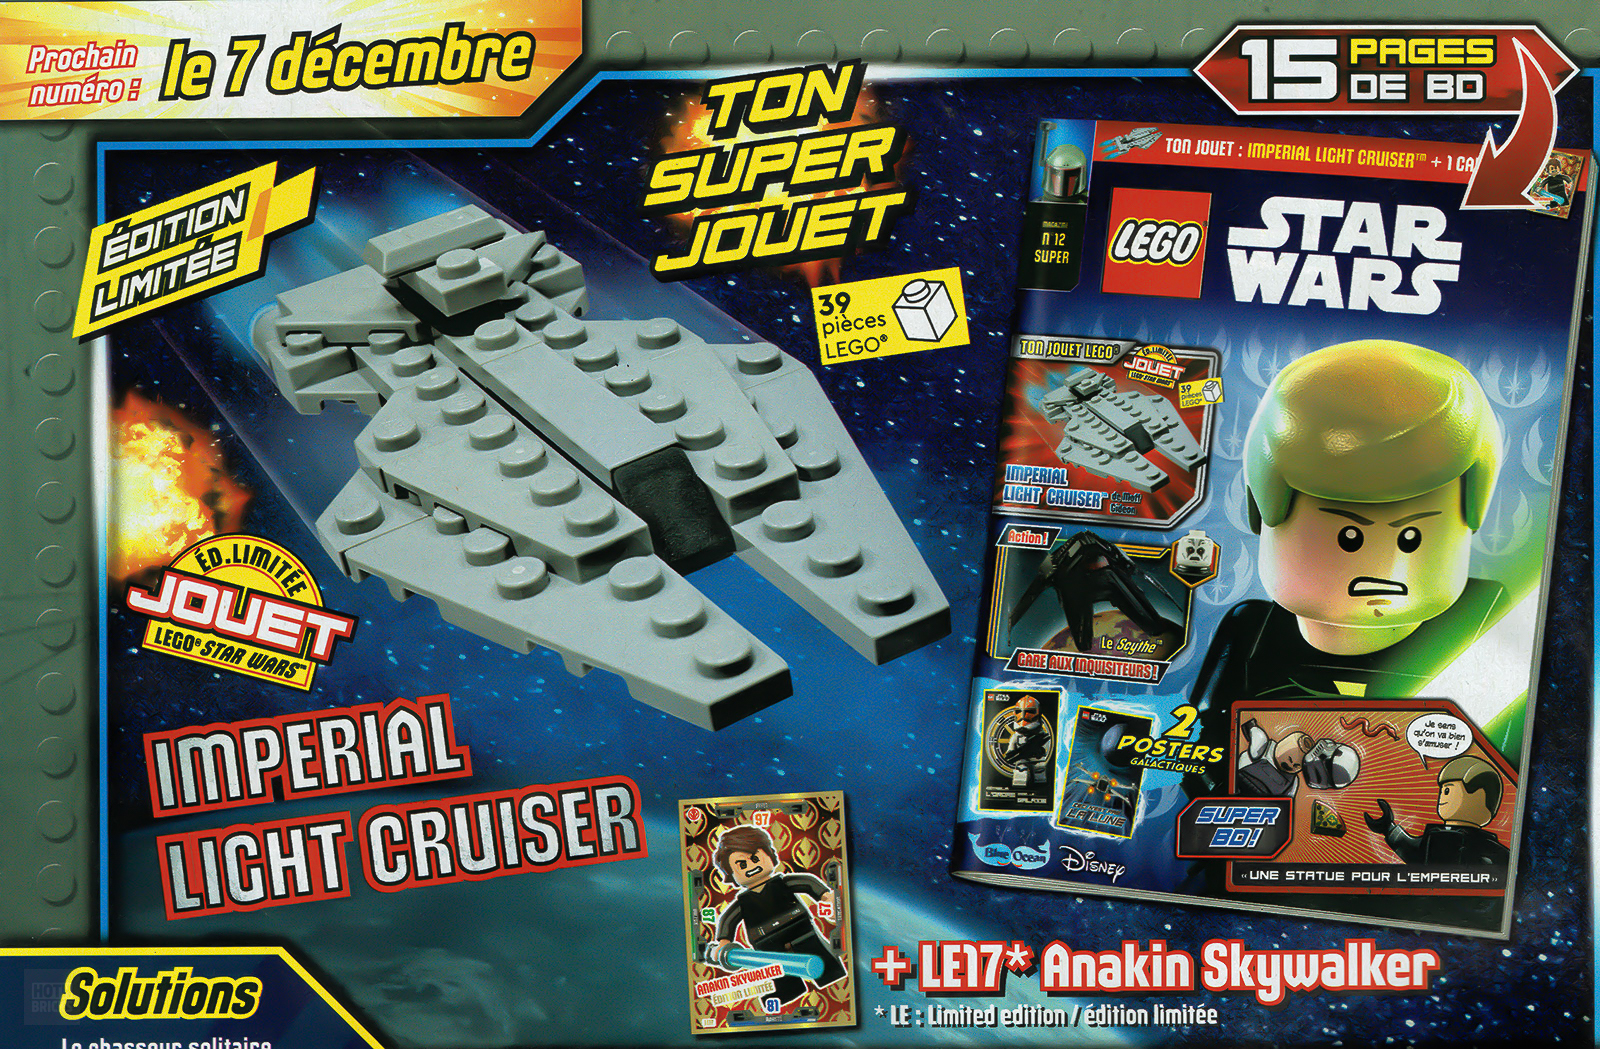 Մամուլի կրպակներում՝ LEGO Star Wars պաշտոնական ամսագրի 2022 թվականի նոյեմբերի համարը